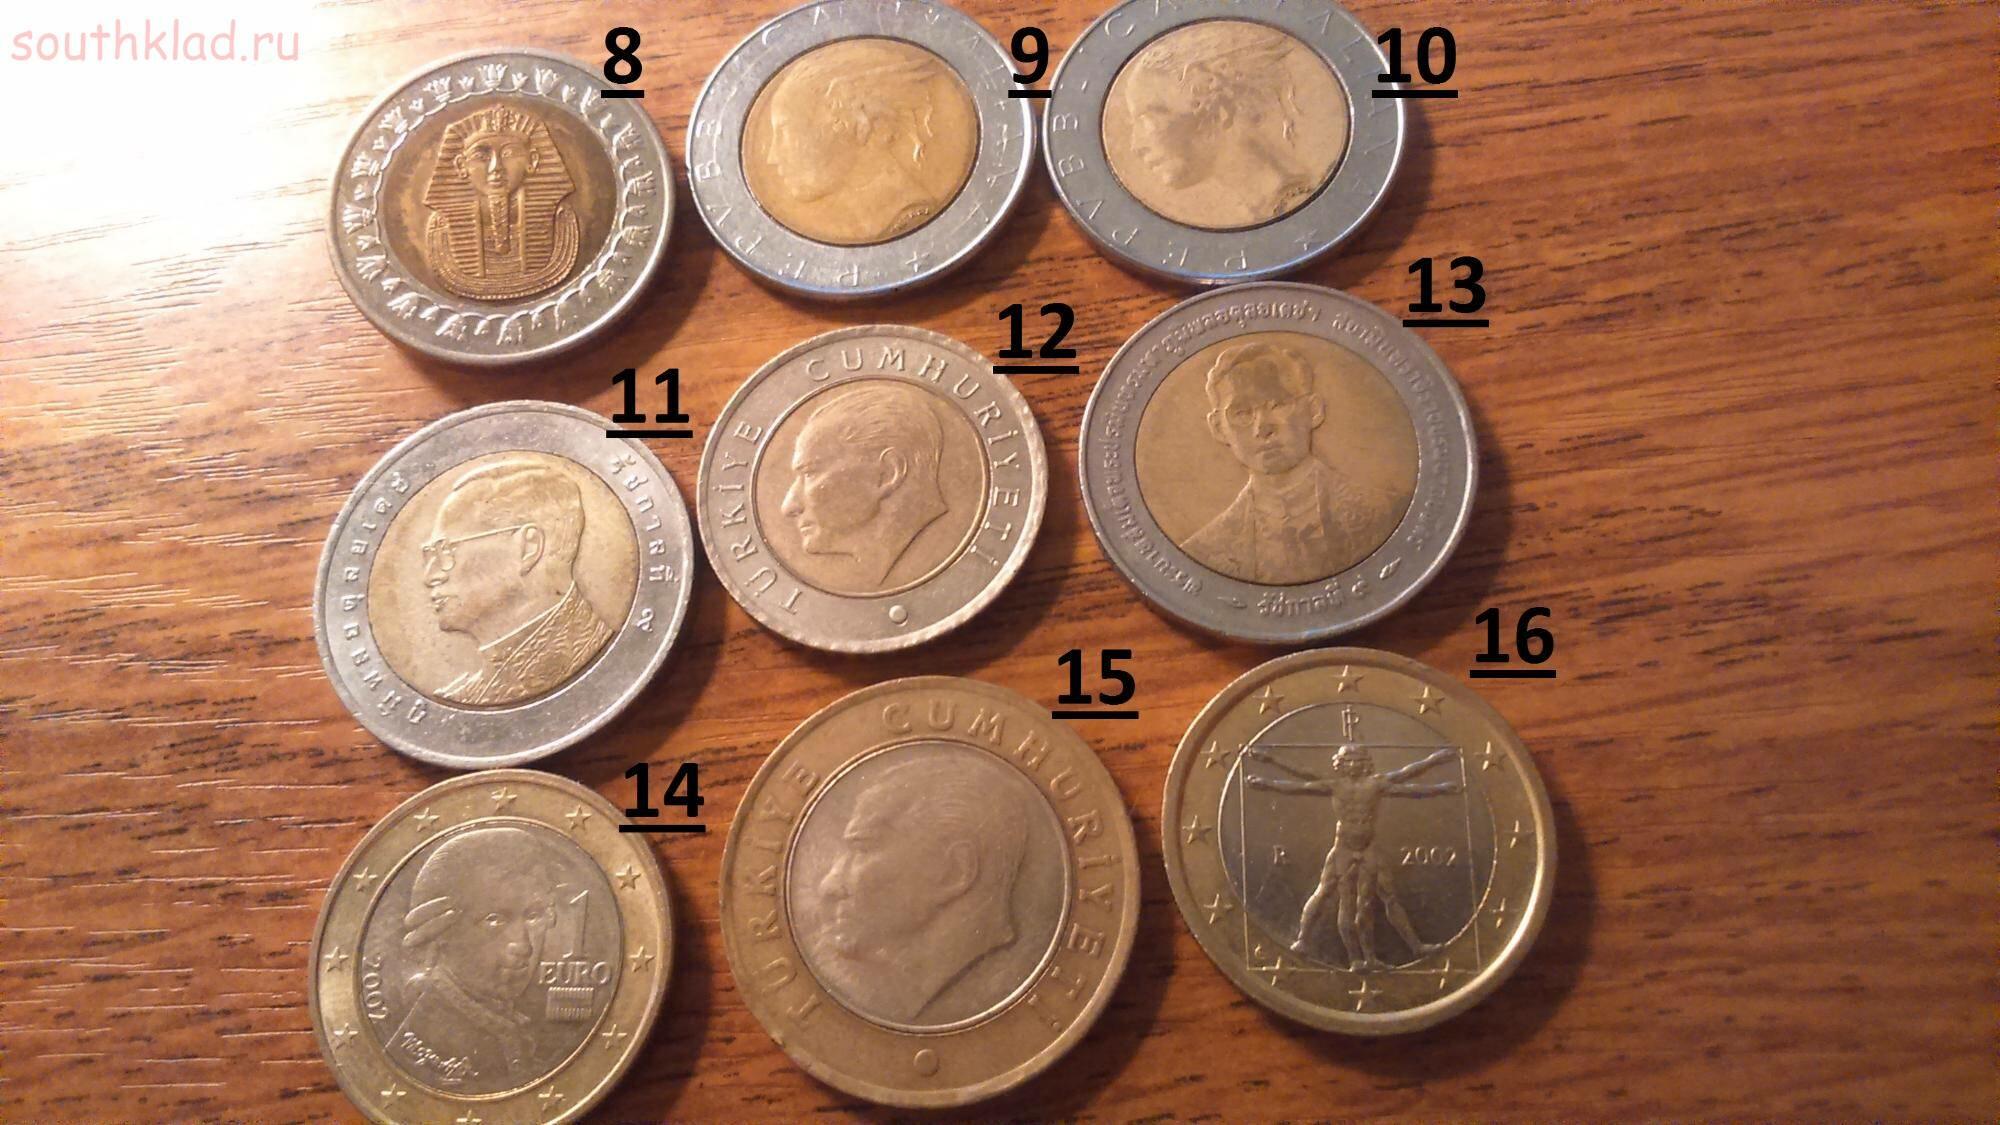 Оценка монеты онлайн по фото